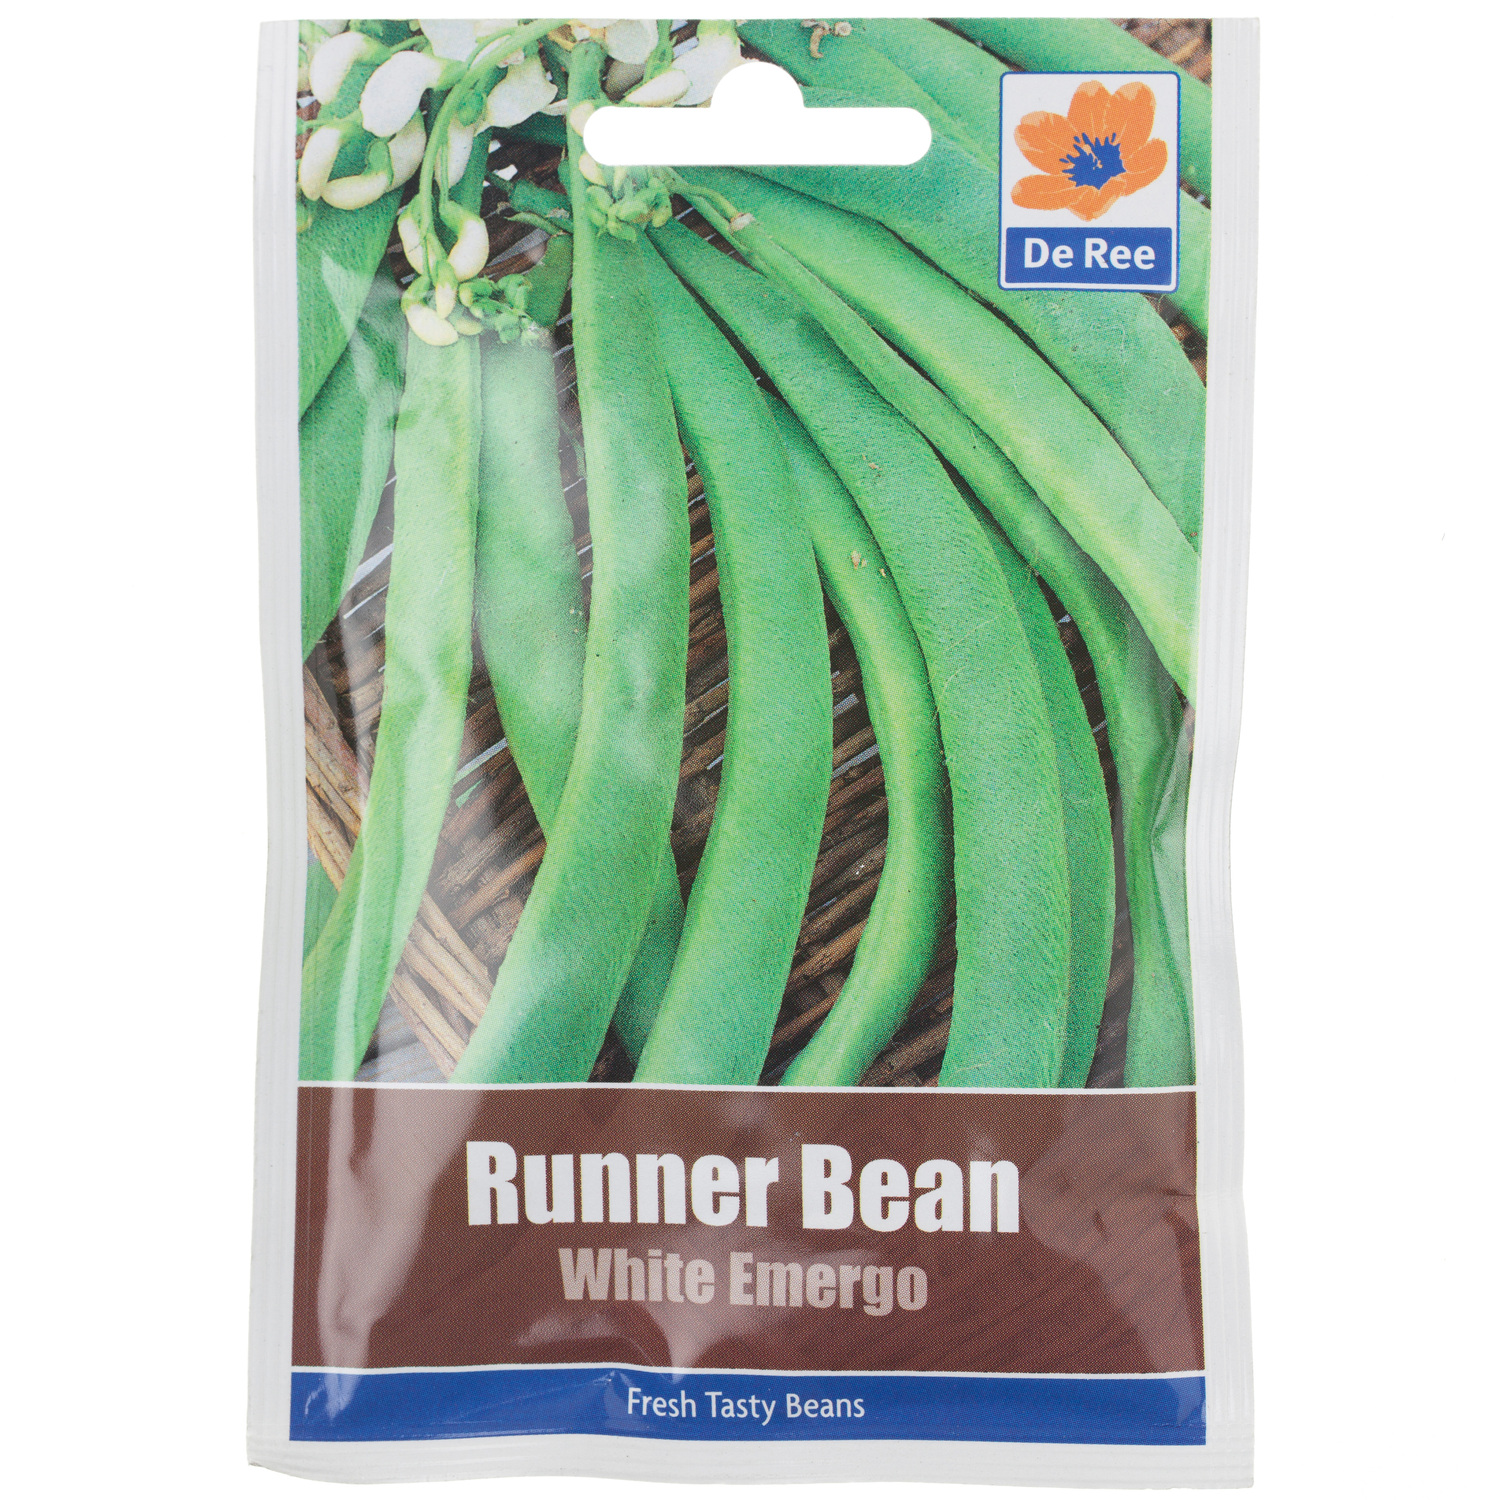 White Emergo Runner Bean Seed Packet Image